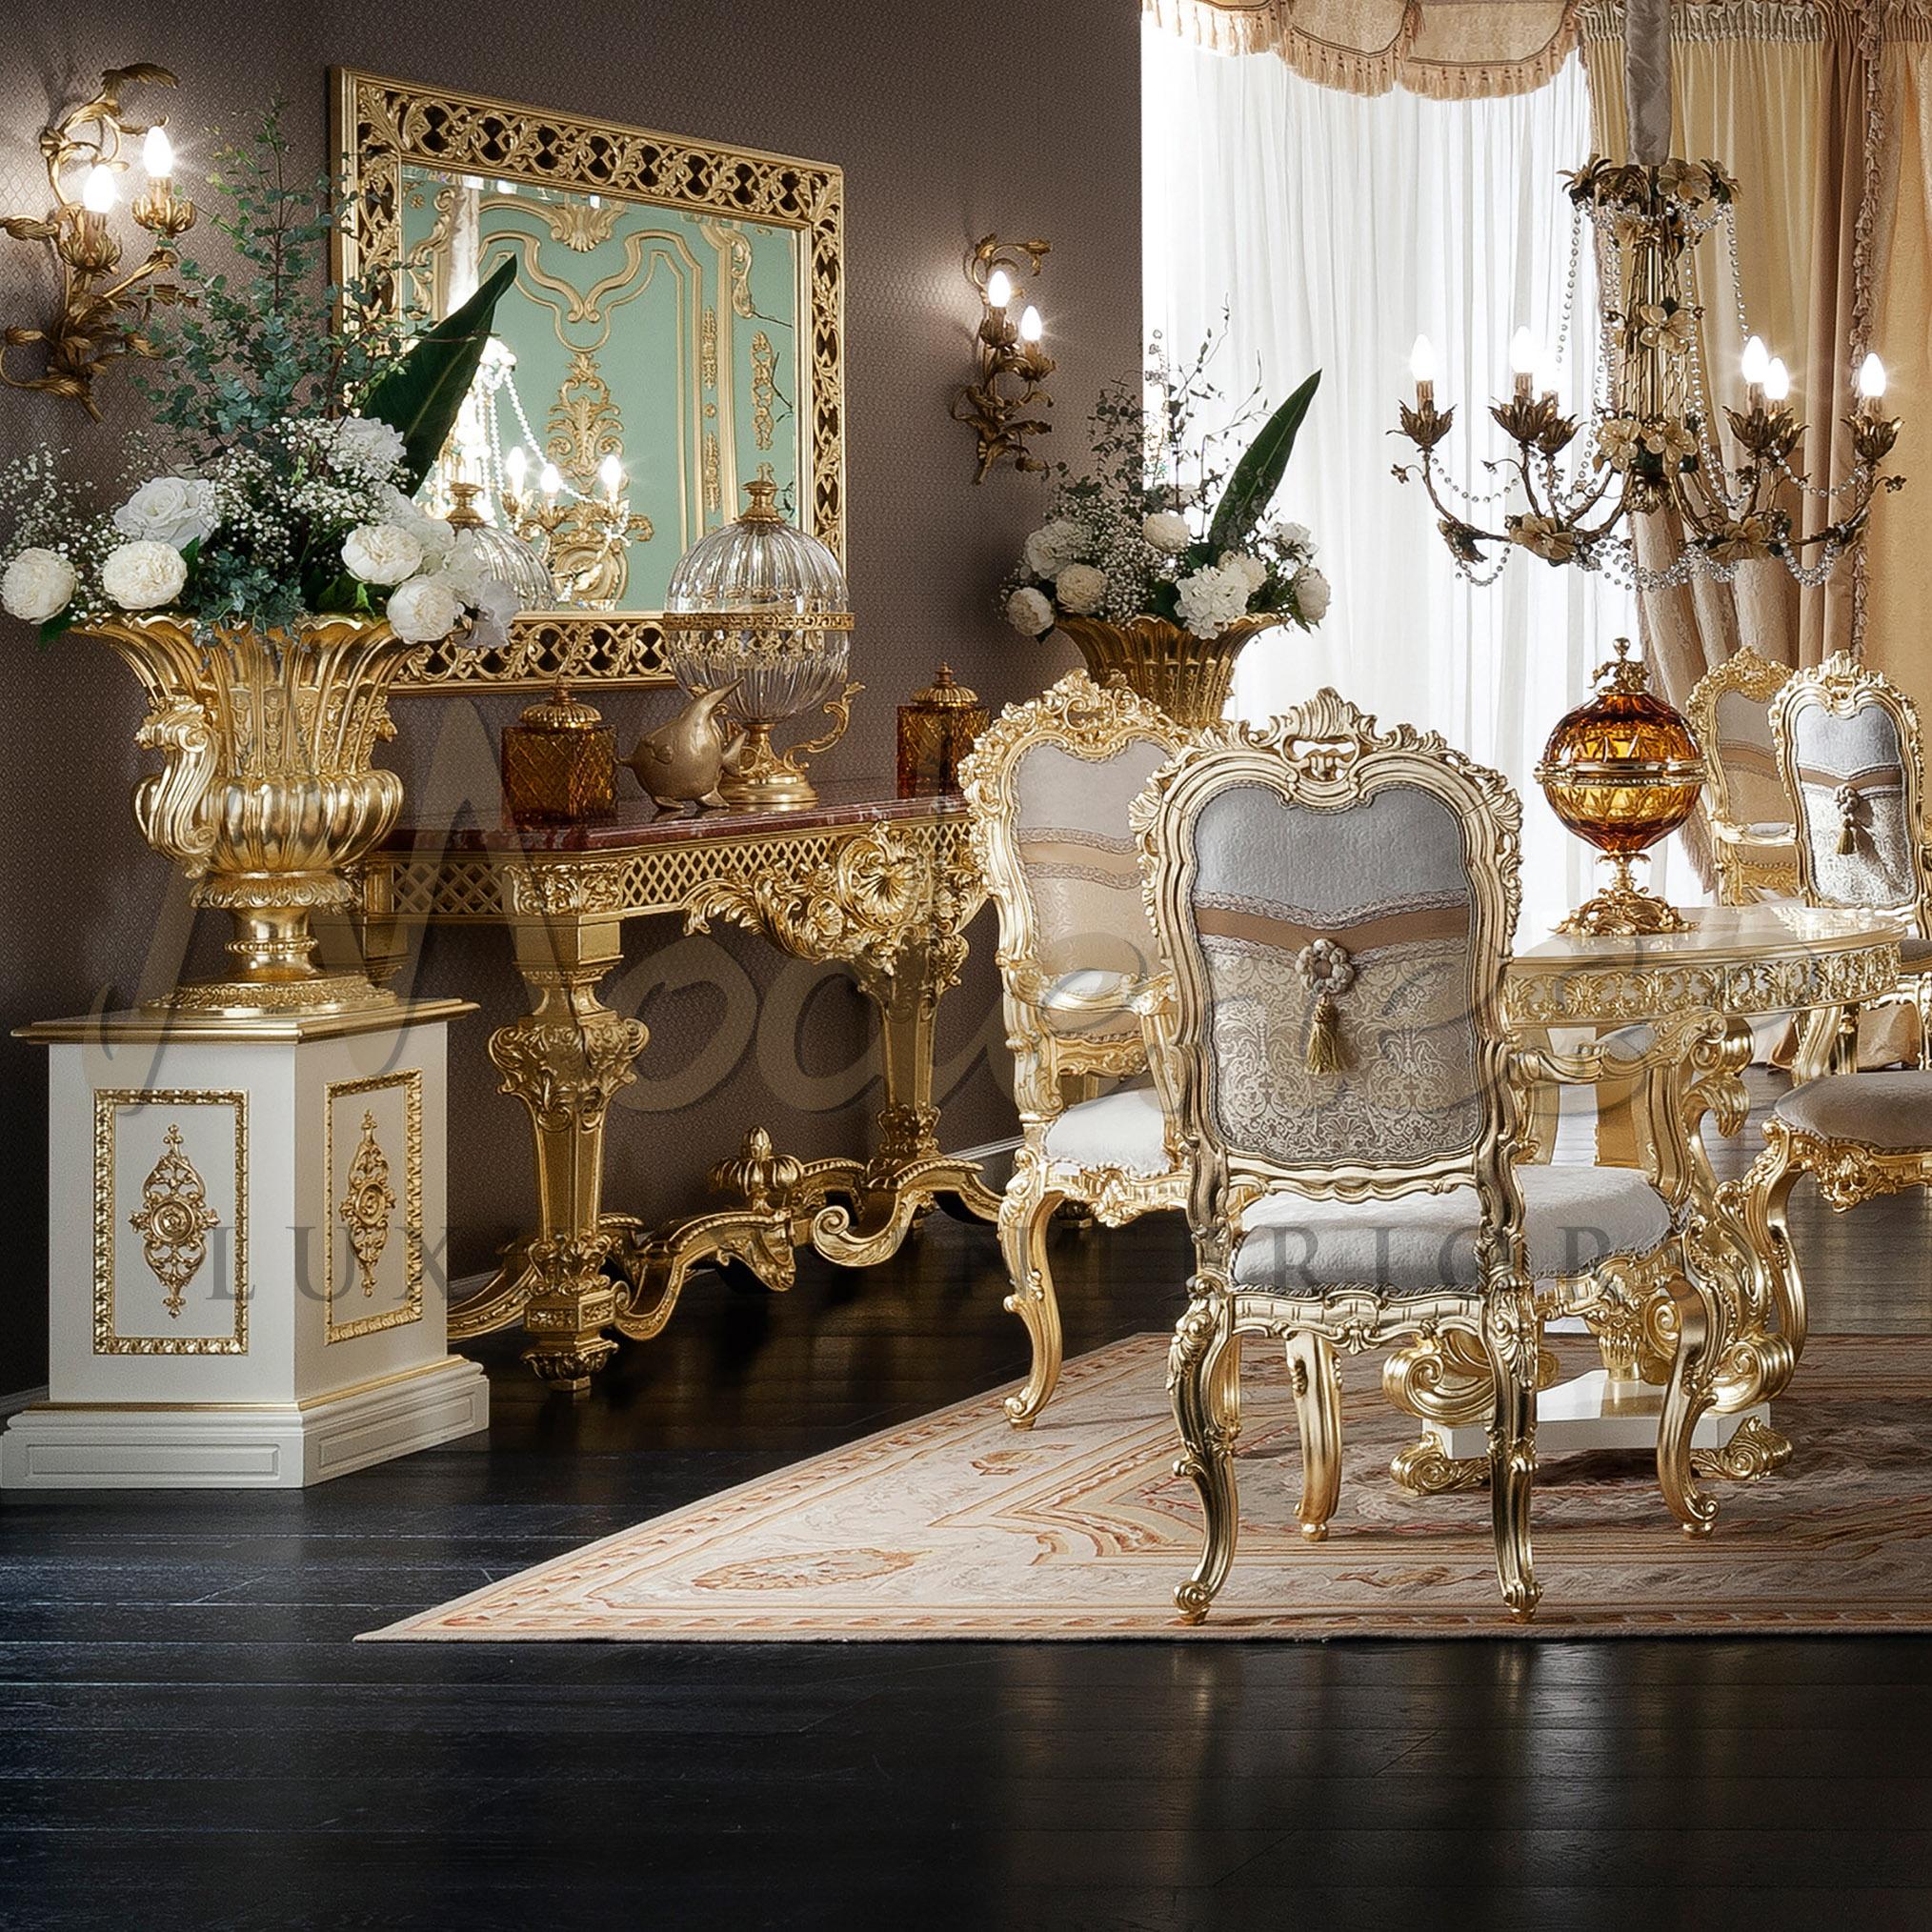 Décorez votre vaste manoir avec une décoration Made in Italy de qualité supérieure. Modenese Interiors présente ce merveilleux vase en bois d'un classicisme précieux, entièrement décoré de feuilles d'or finies à la main. L'inspiration du luxe